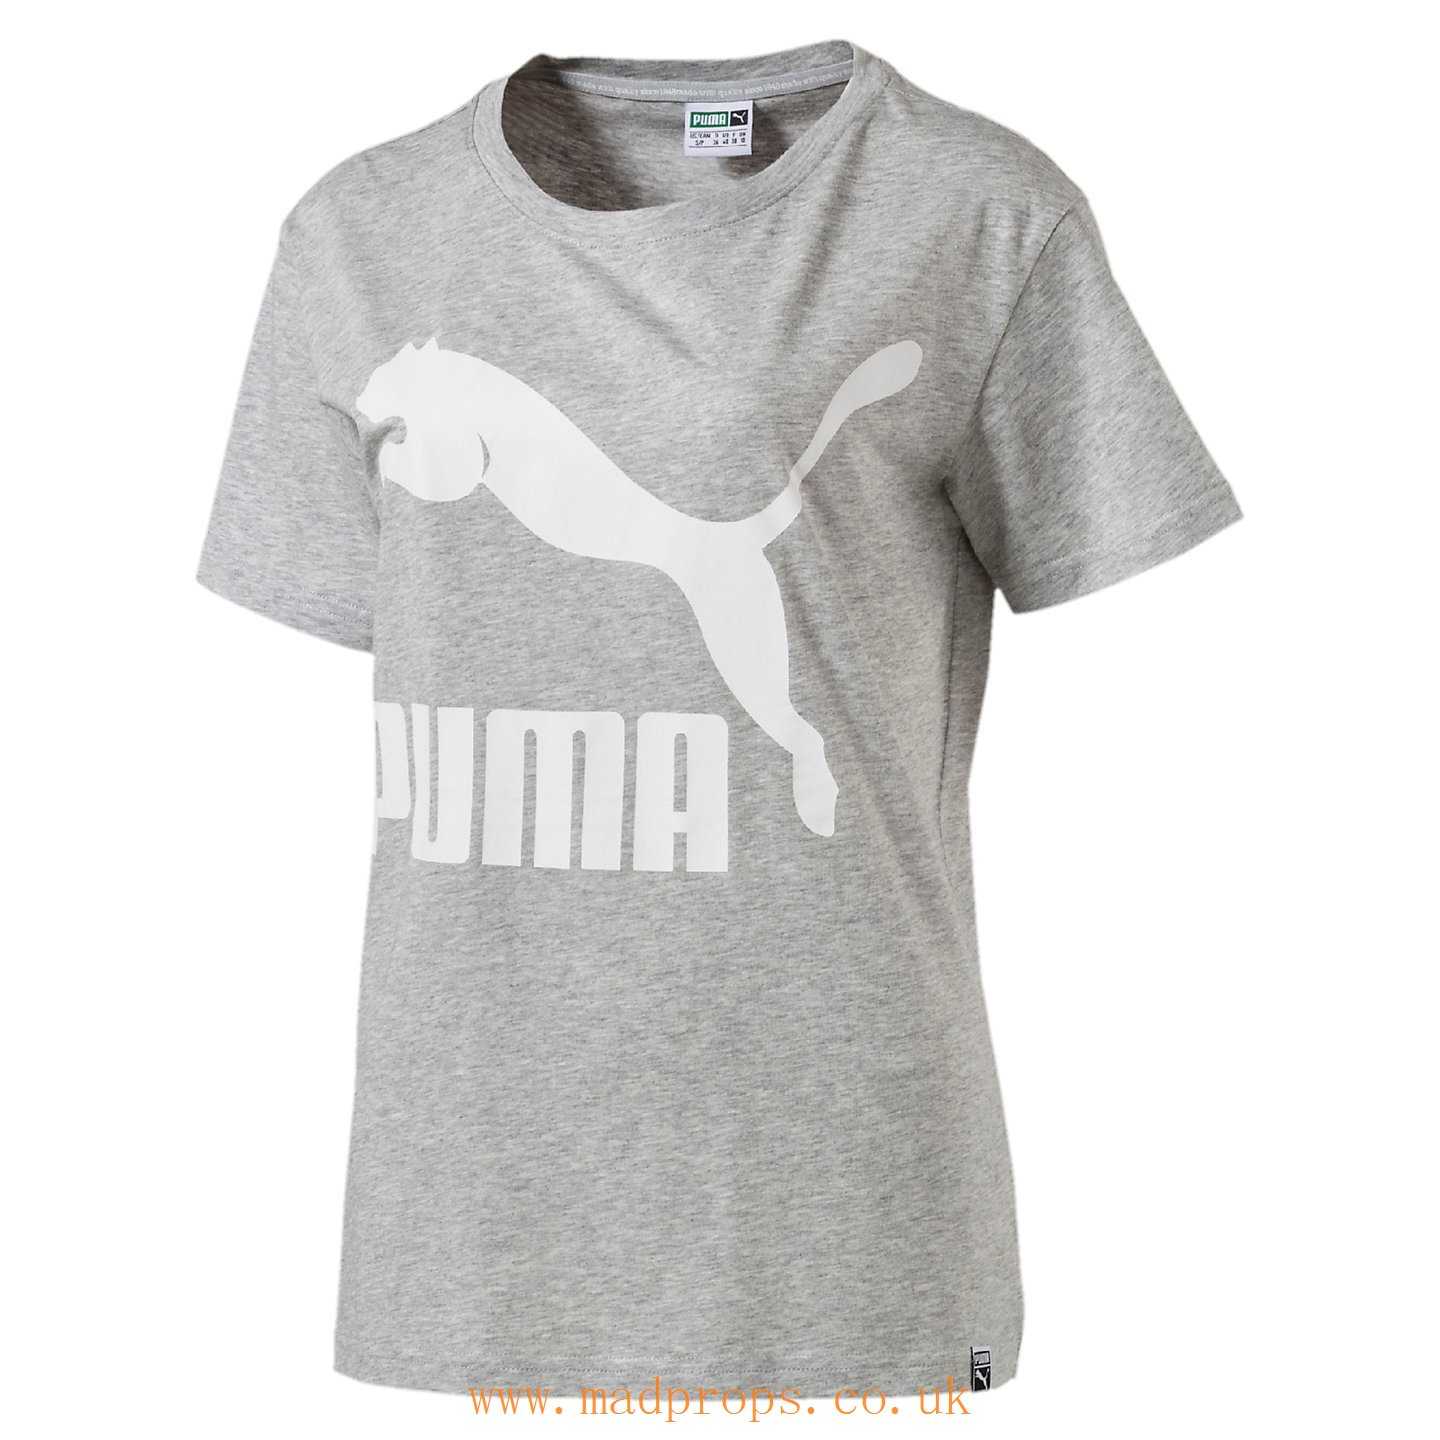 Light Gray Logo - Puma Cheap Clearance Archive Women's Logo T - Shirt EZ490 - Light ...